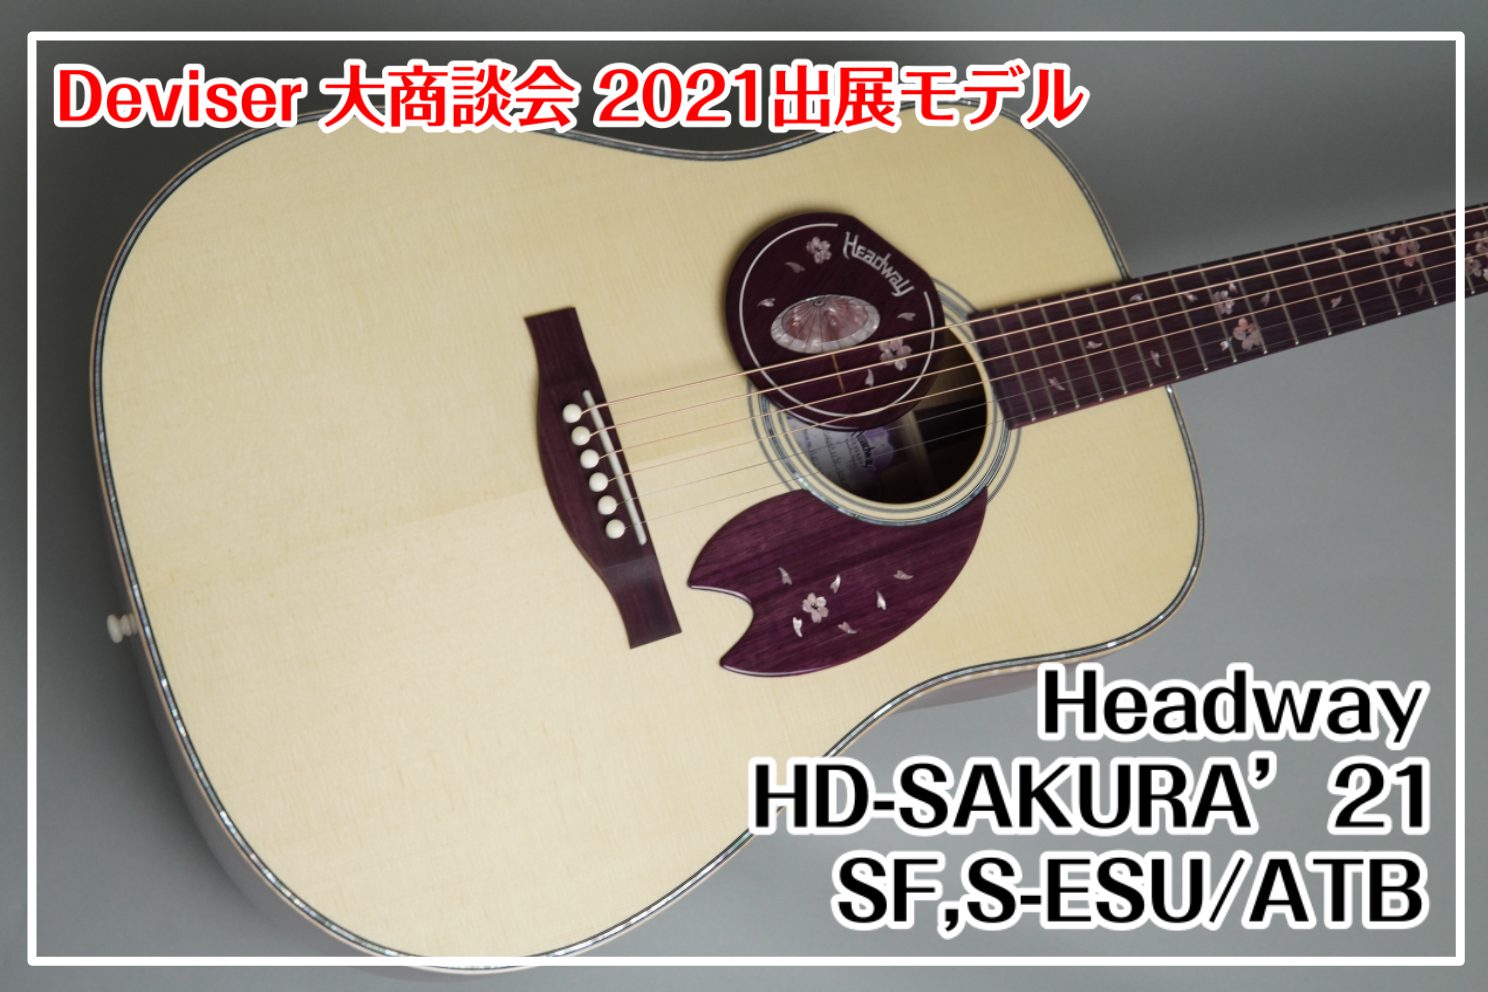 【限定モデル】Headway HD-SAKURA’21 SF,S-ESU/ATB -Devise大商談会2021-出展品！